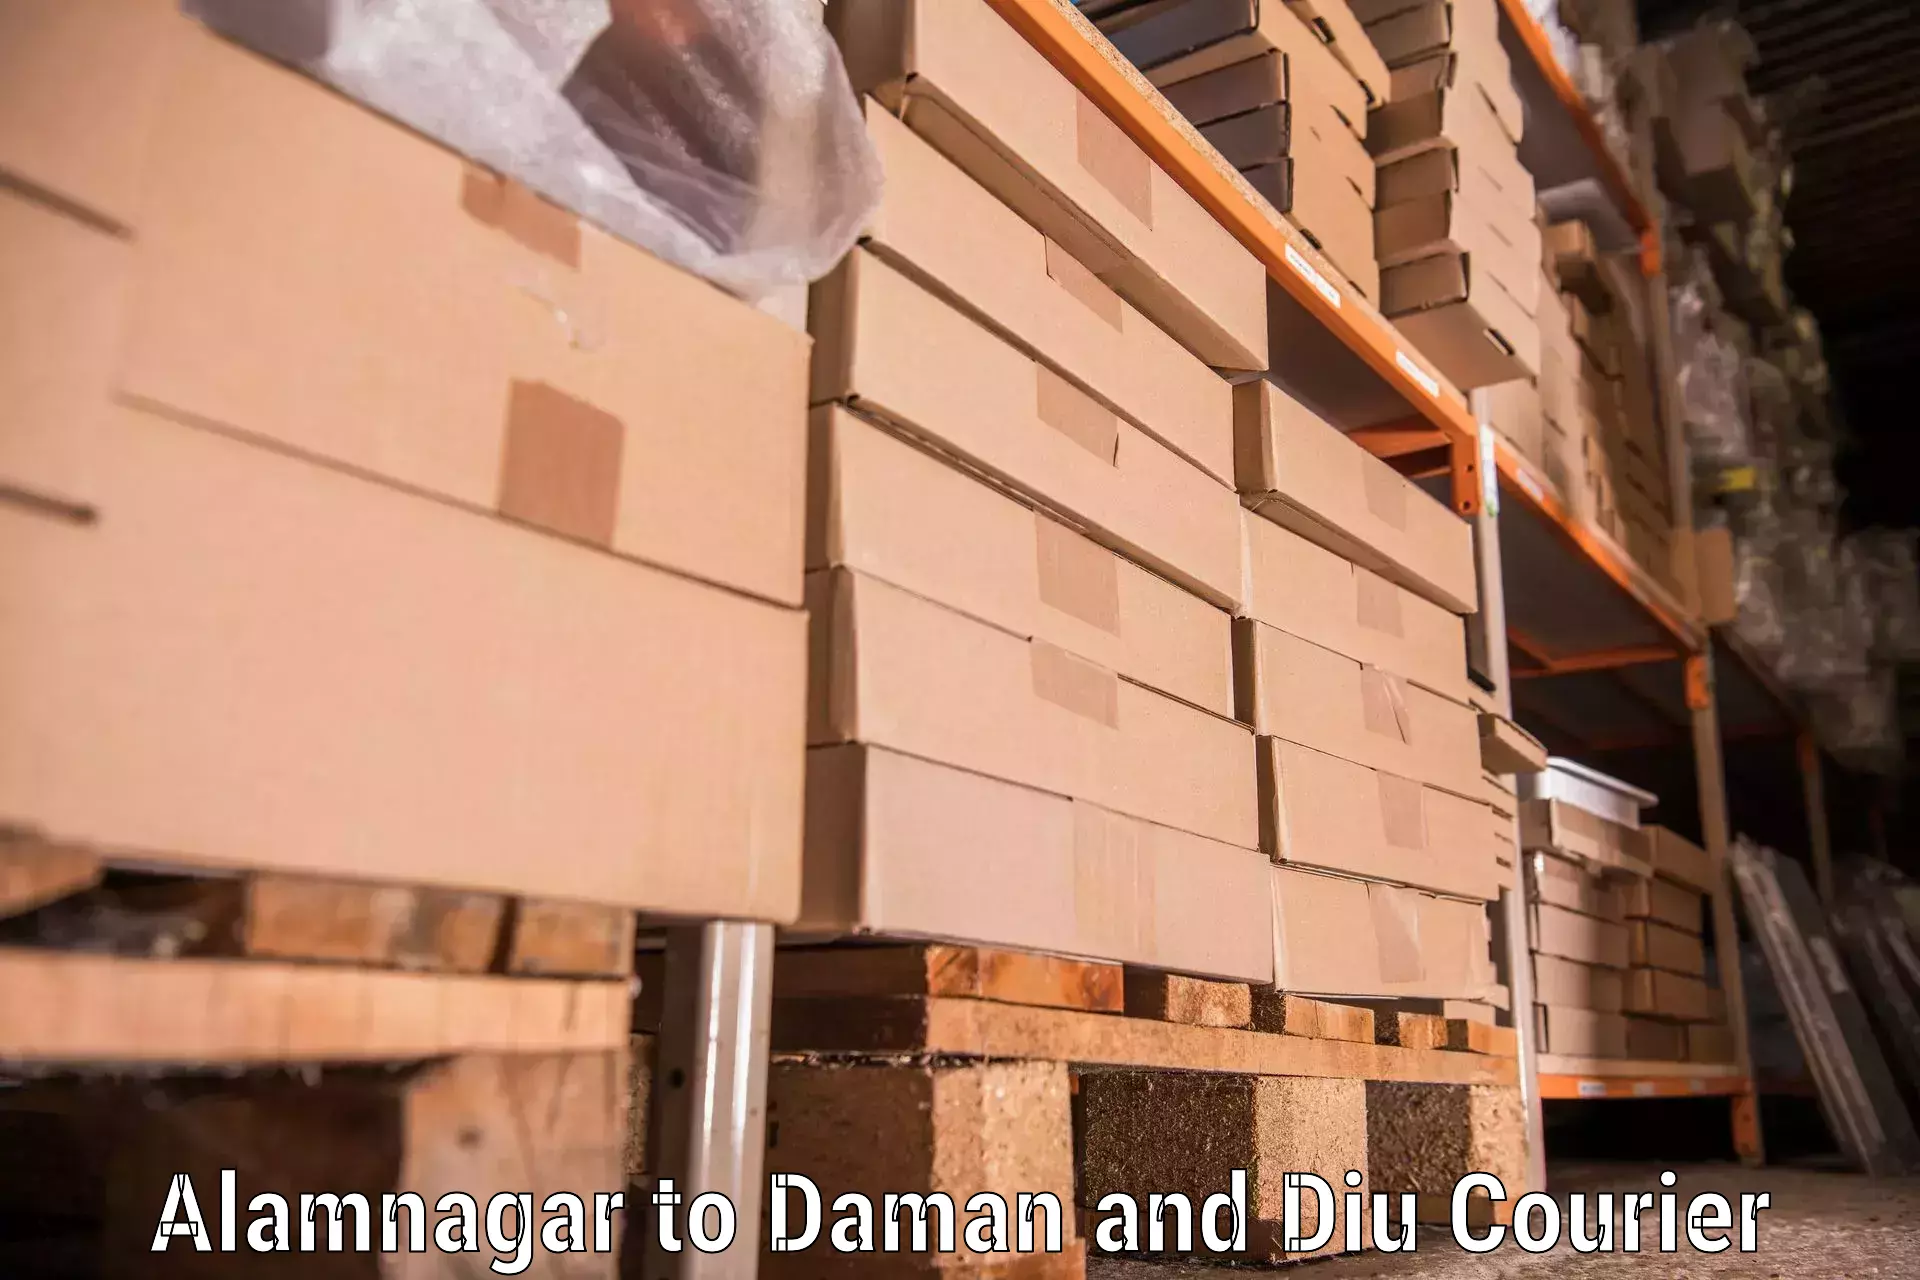 Furniture transport specialists Alamnagar to Daman and Diu